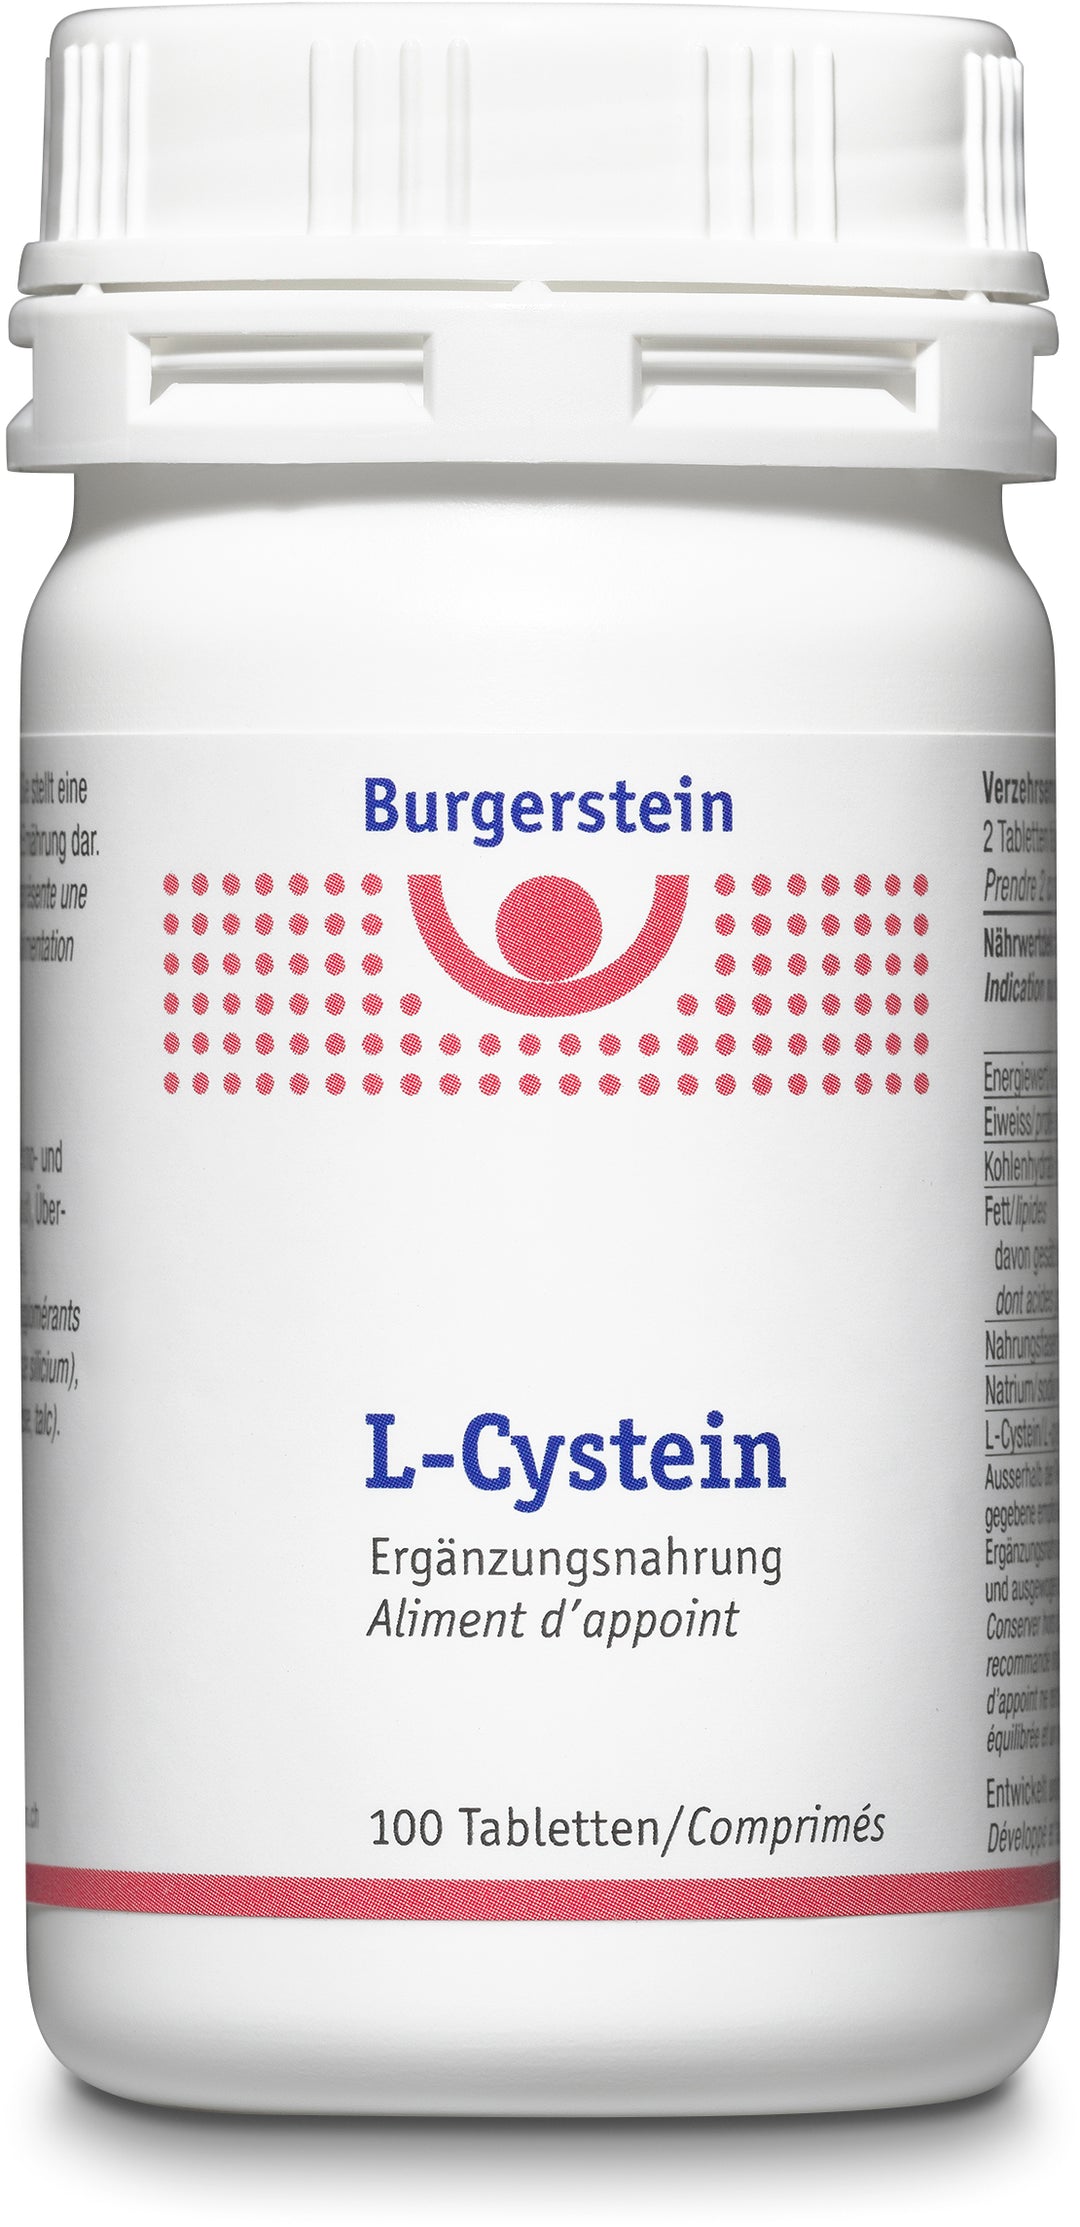 BURGERSTEIN L-Cystein tablets box 100 pieces